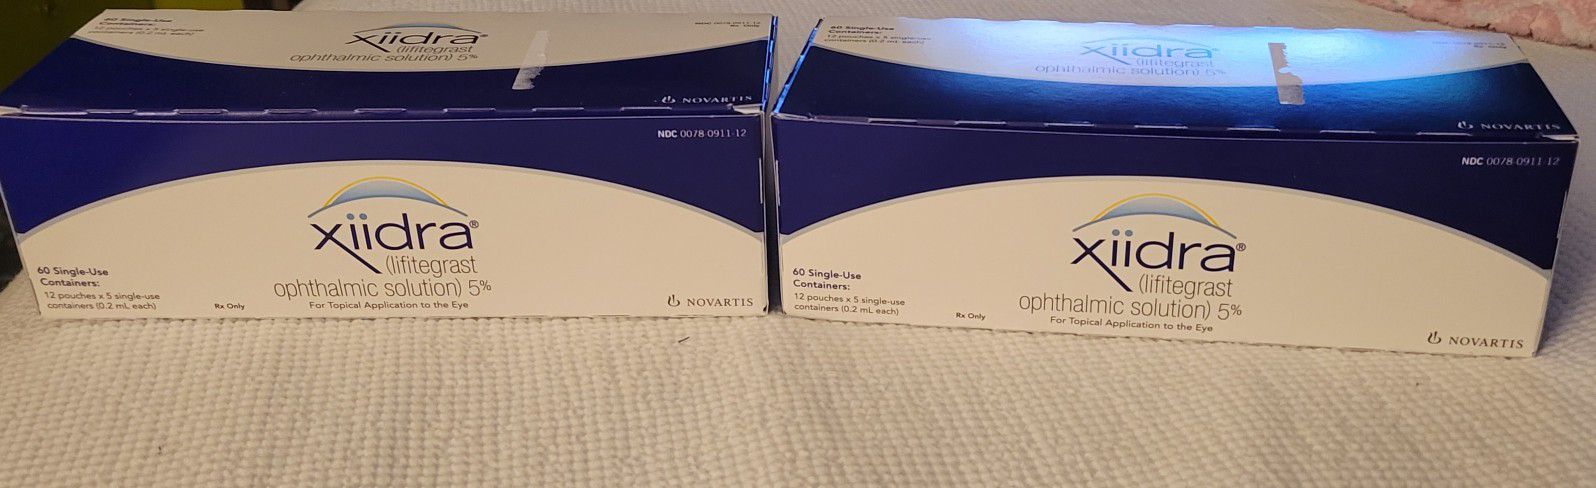 Xiidra Prescription Eye drops --2 Boxes--$100  for both boxes!!